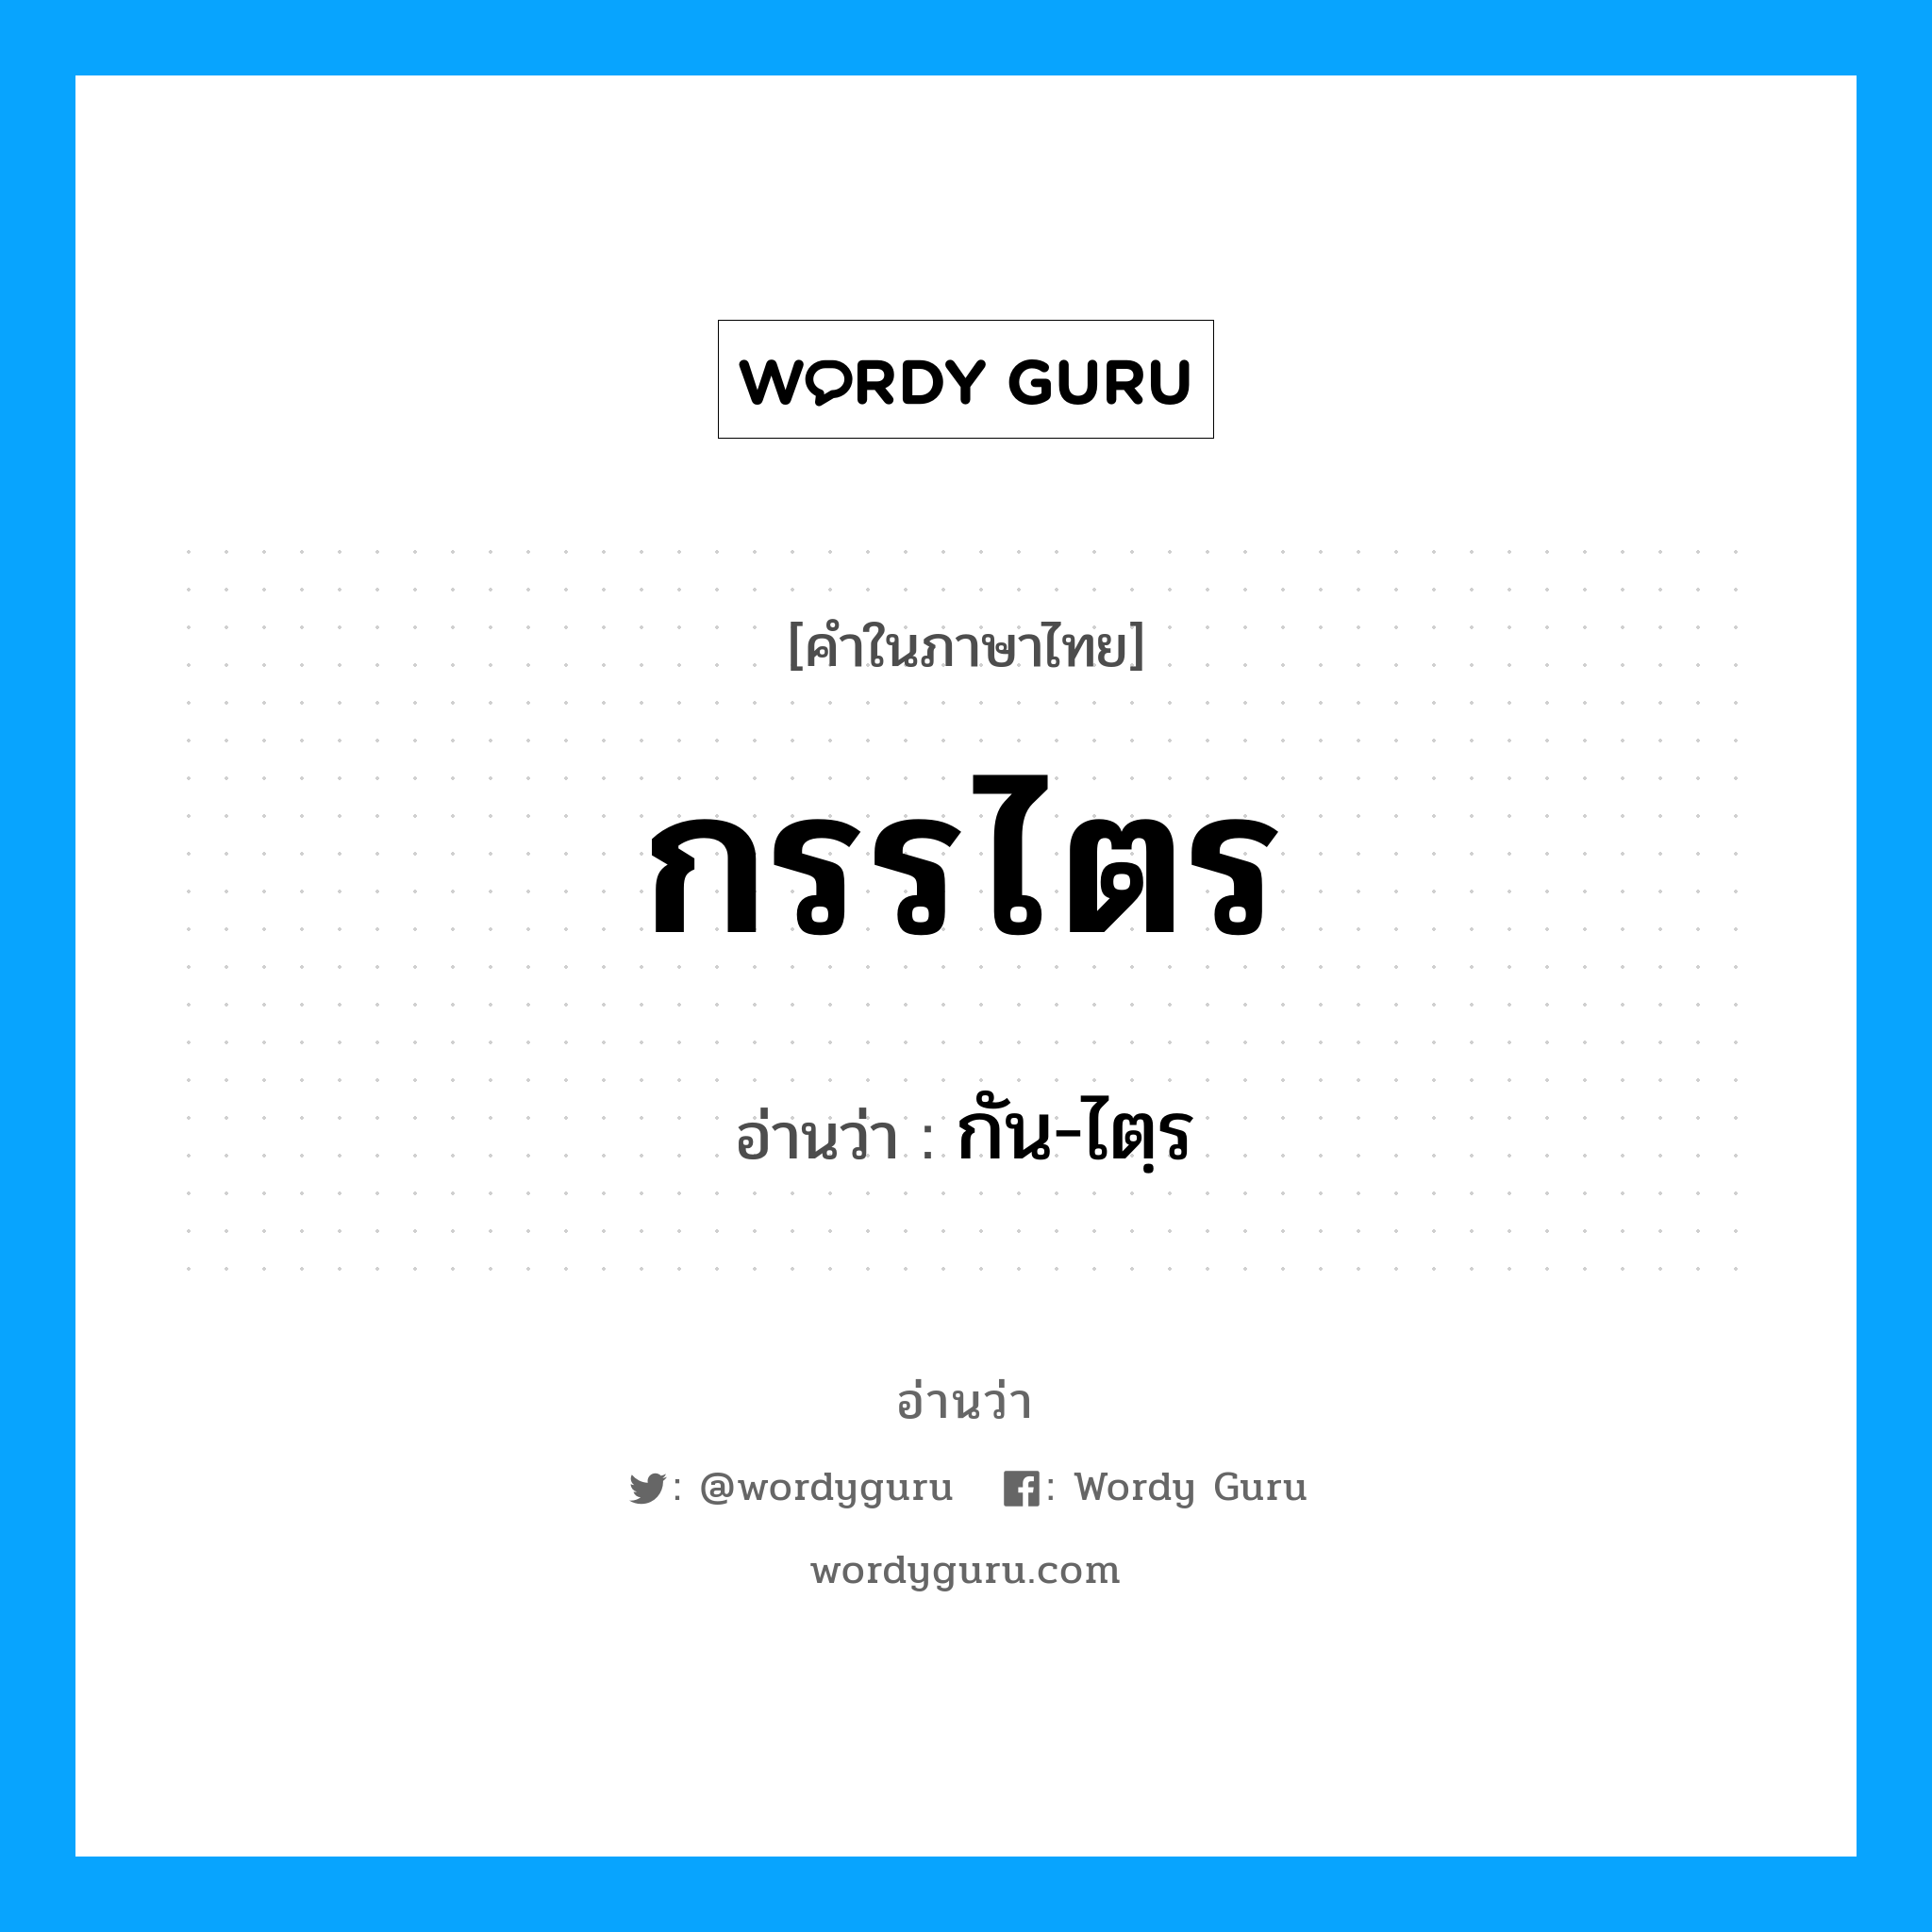 กัน-ไตฺร เป็นคำอ่านของคำไหน?, คำในภาษาไทย กัน-ไตฺร อ่านว่า กรรไตร